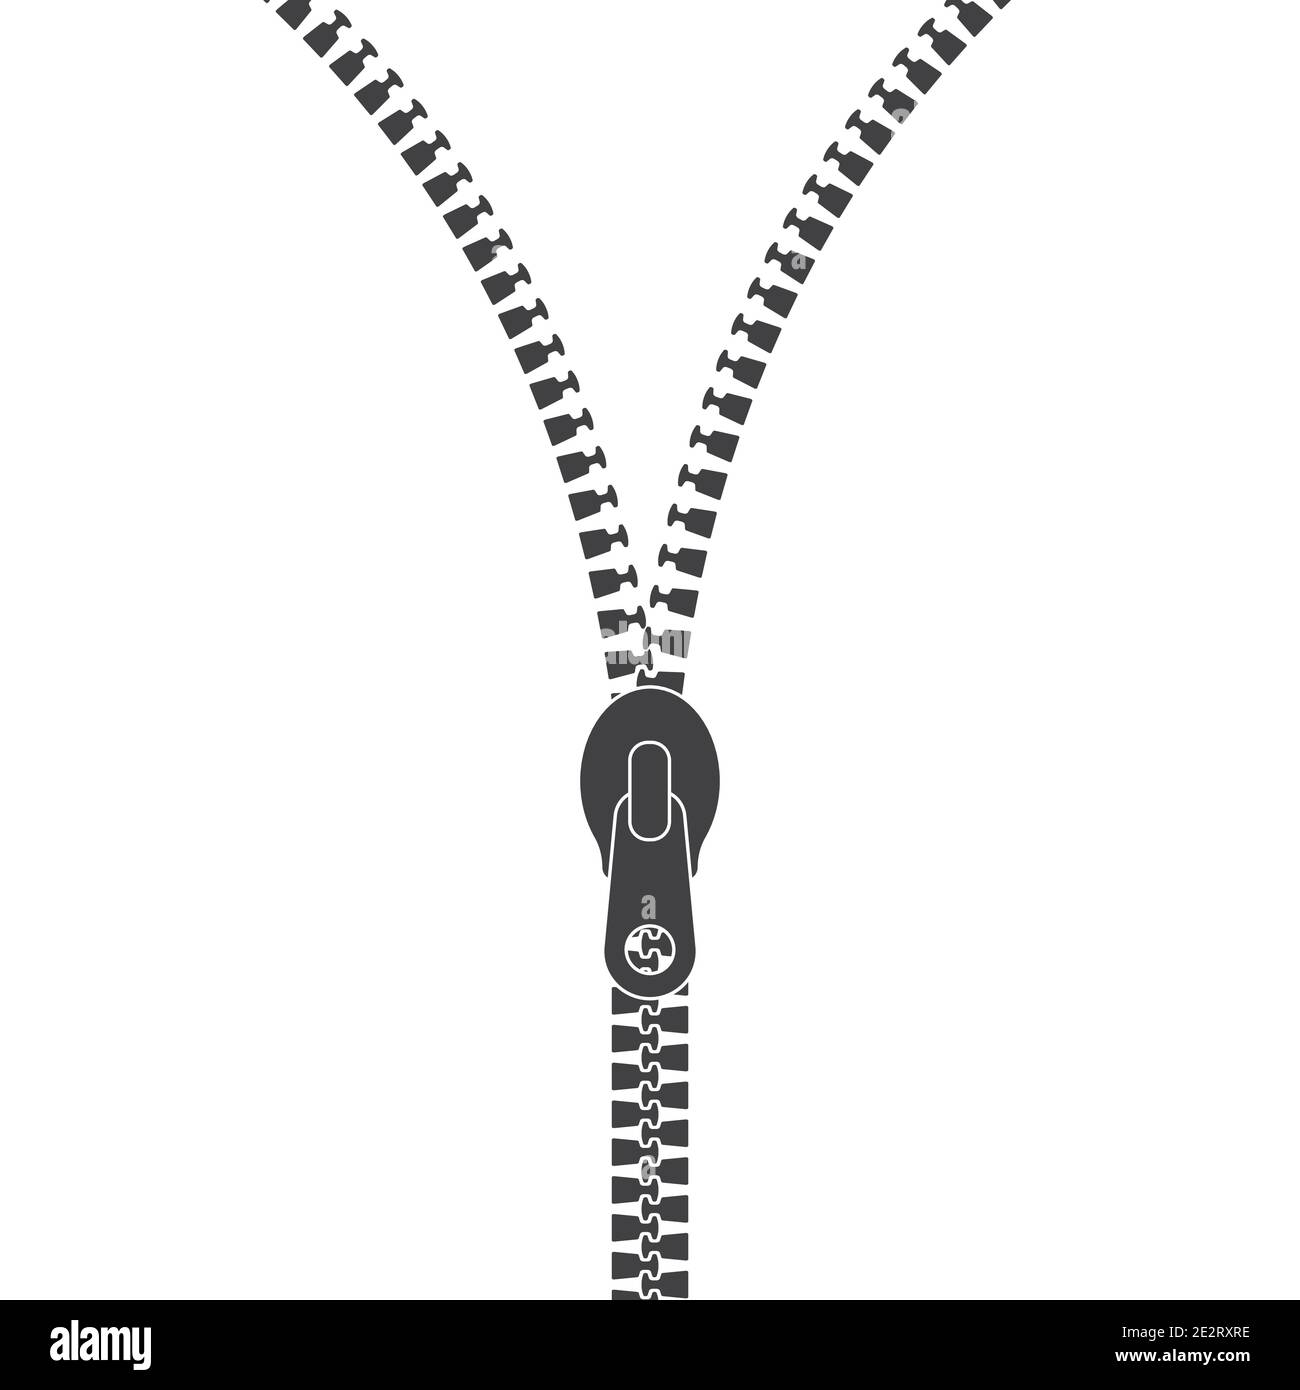 Open Zipper minimal logo. Zip Vector iicon Stock Vector Image & Art - Alamy